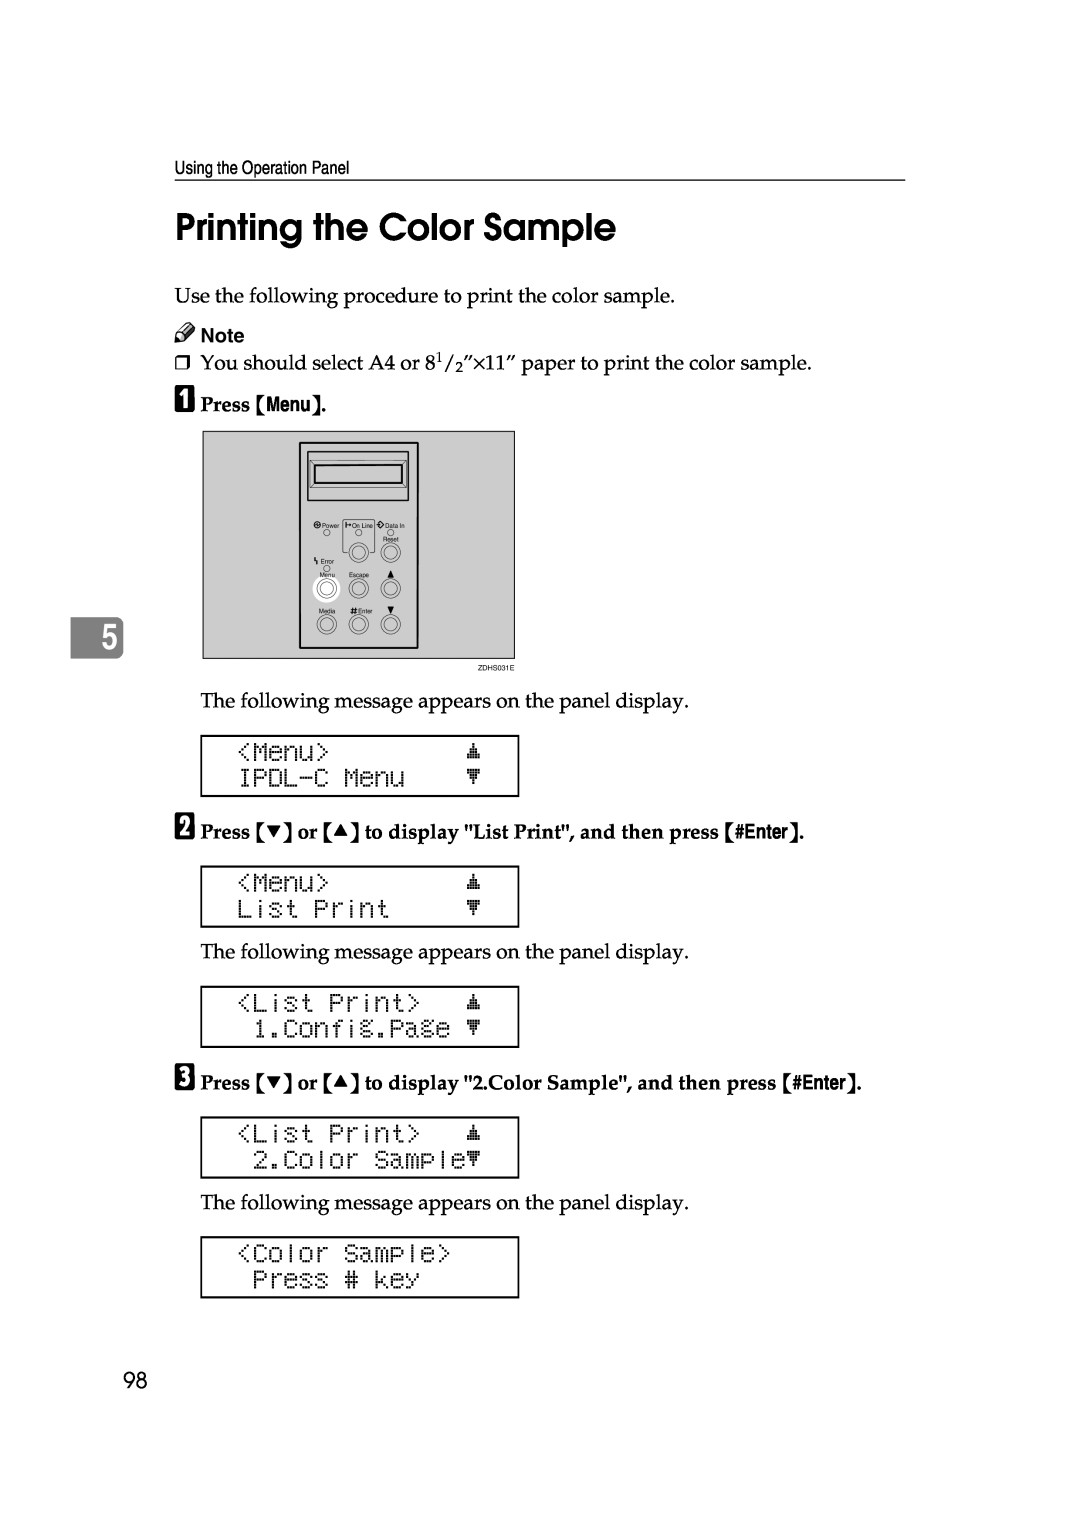 Lanier AP206 manual Printing the Color Sample, List Print j 2.Color Samplel, Color Sample Press # key, IPDL-C Menu 